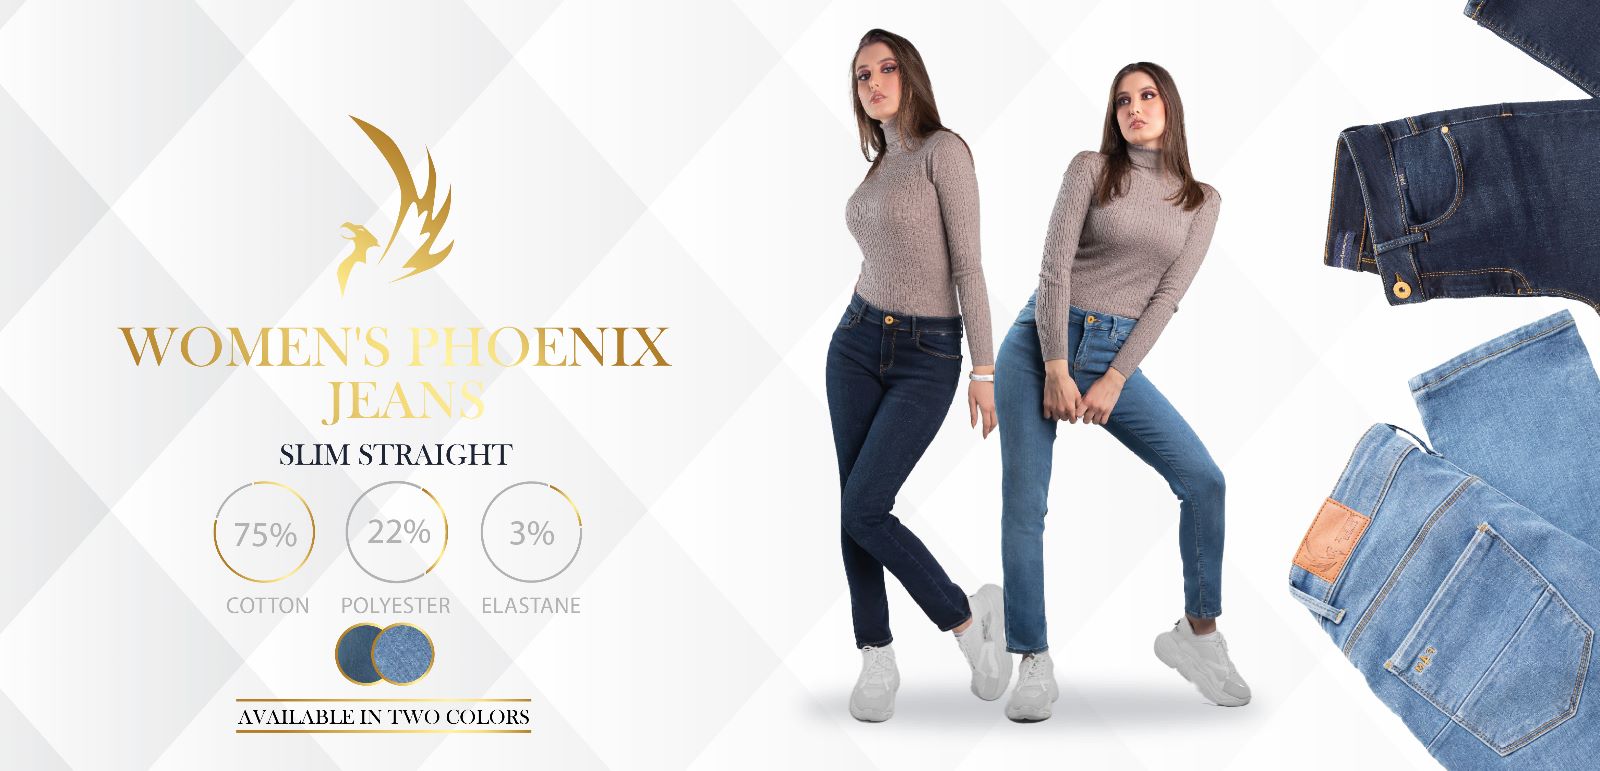 Women’s Phoenix jeans